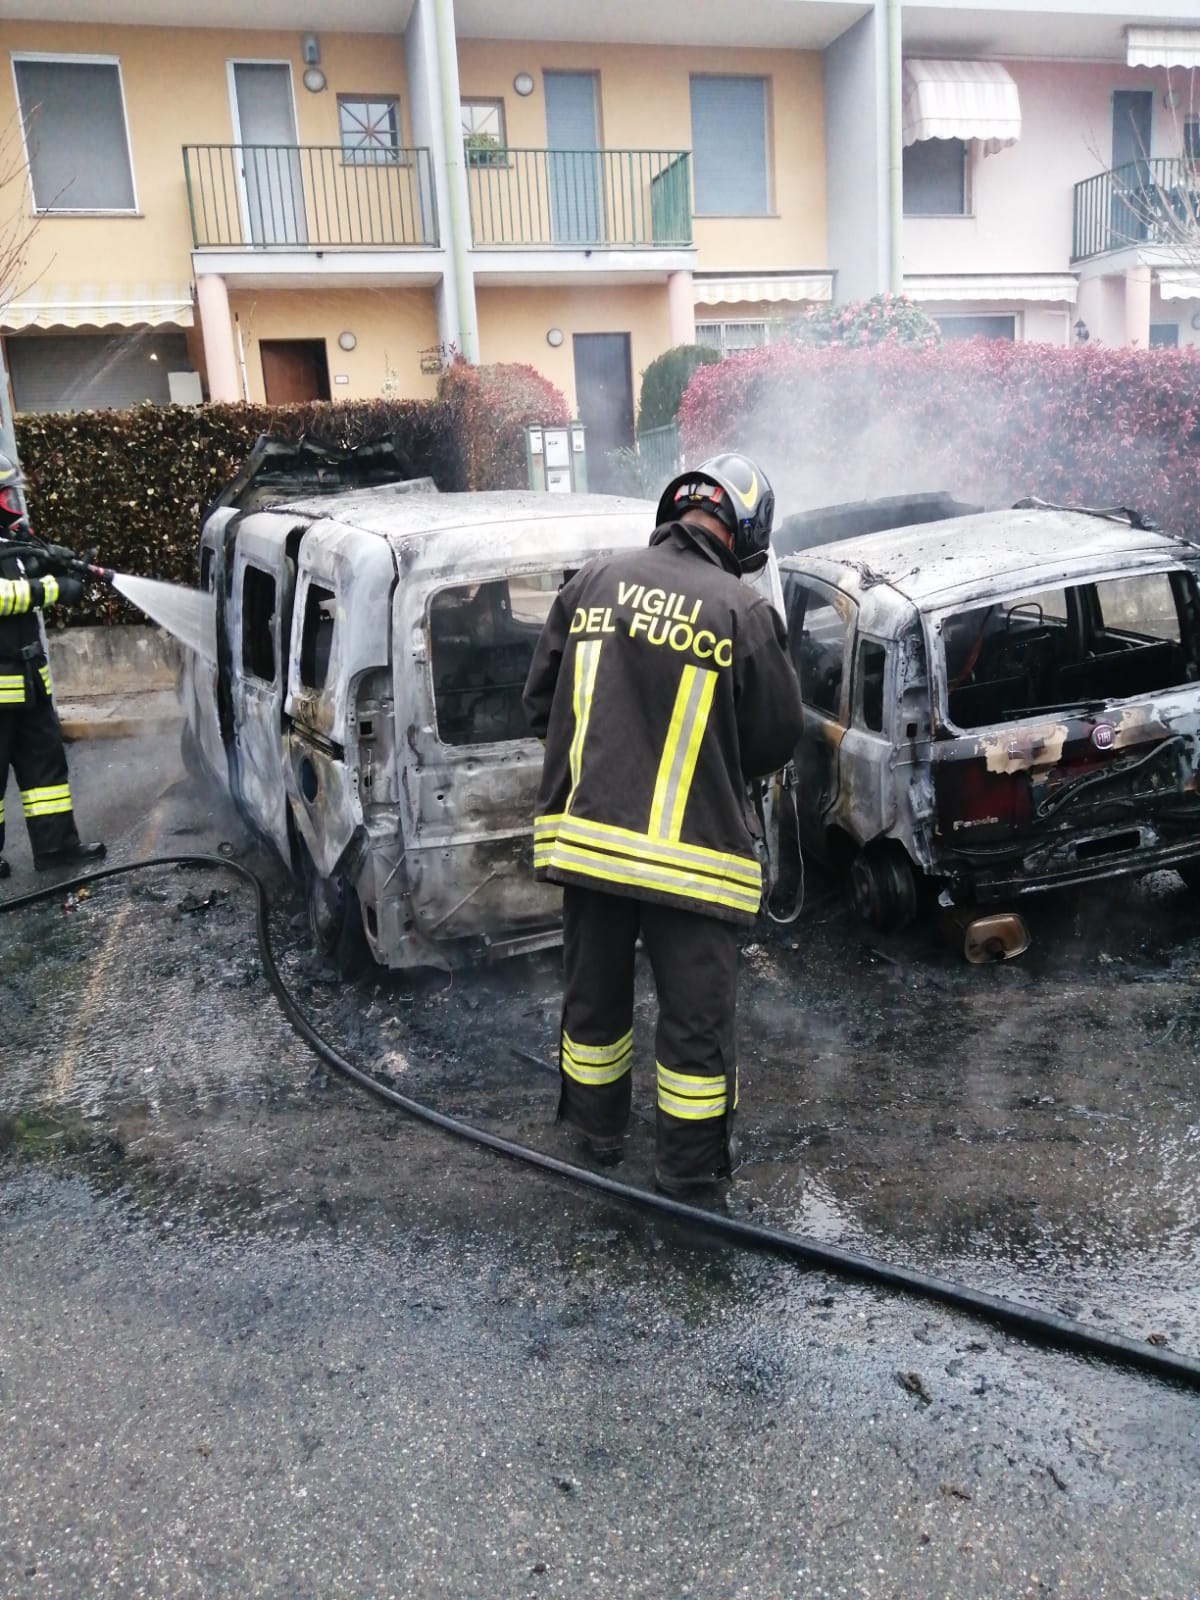 IMG-20240Golasecca auto a fuoco tentato suicidio vigili del fuoco326-WA0003